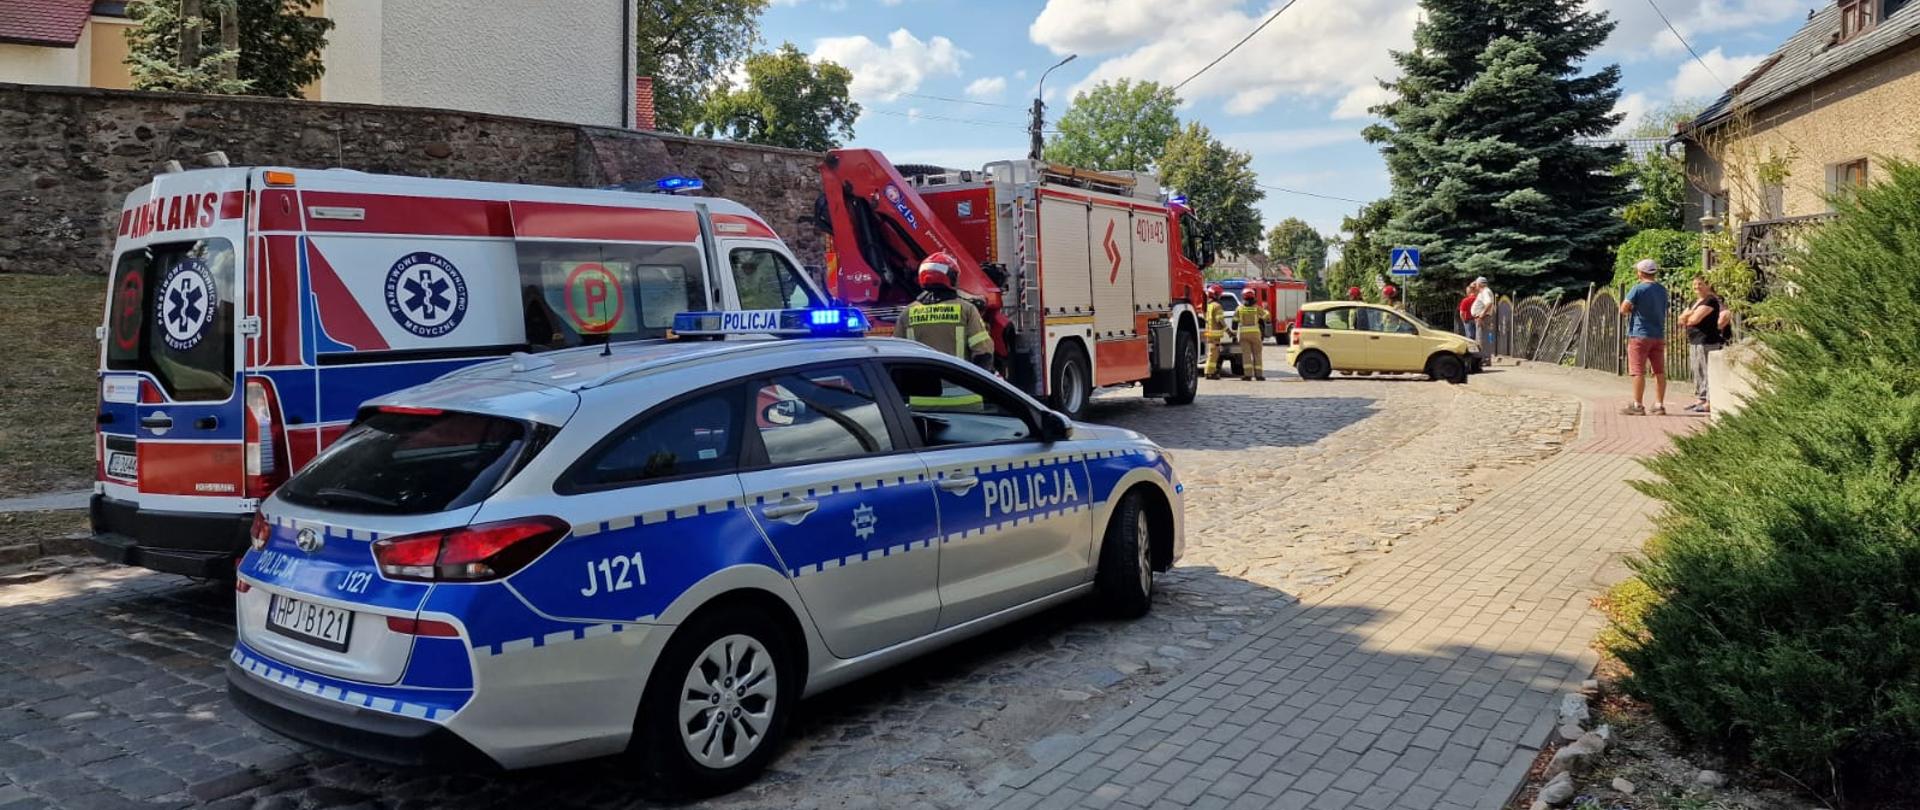 Wypadek z udziałem samochodu osobowego w miejscowości Pępice - zdjęcie przedstawia samochody służb (ZRM, policja i straż pożarna) w tle widać samochód koloru żółtego, który uległ wypadkowi